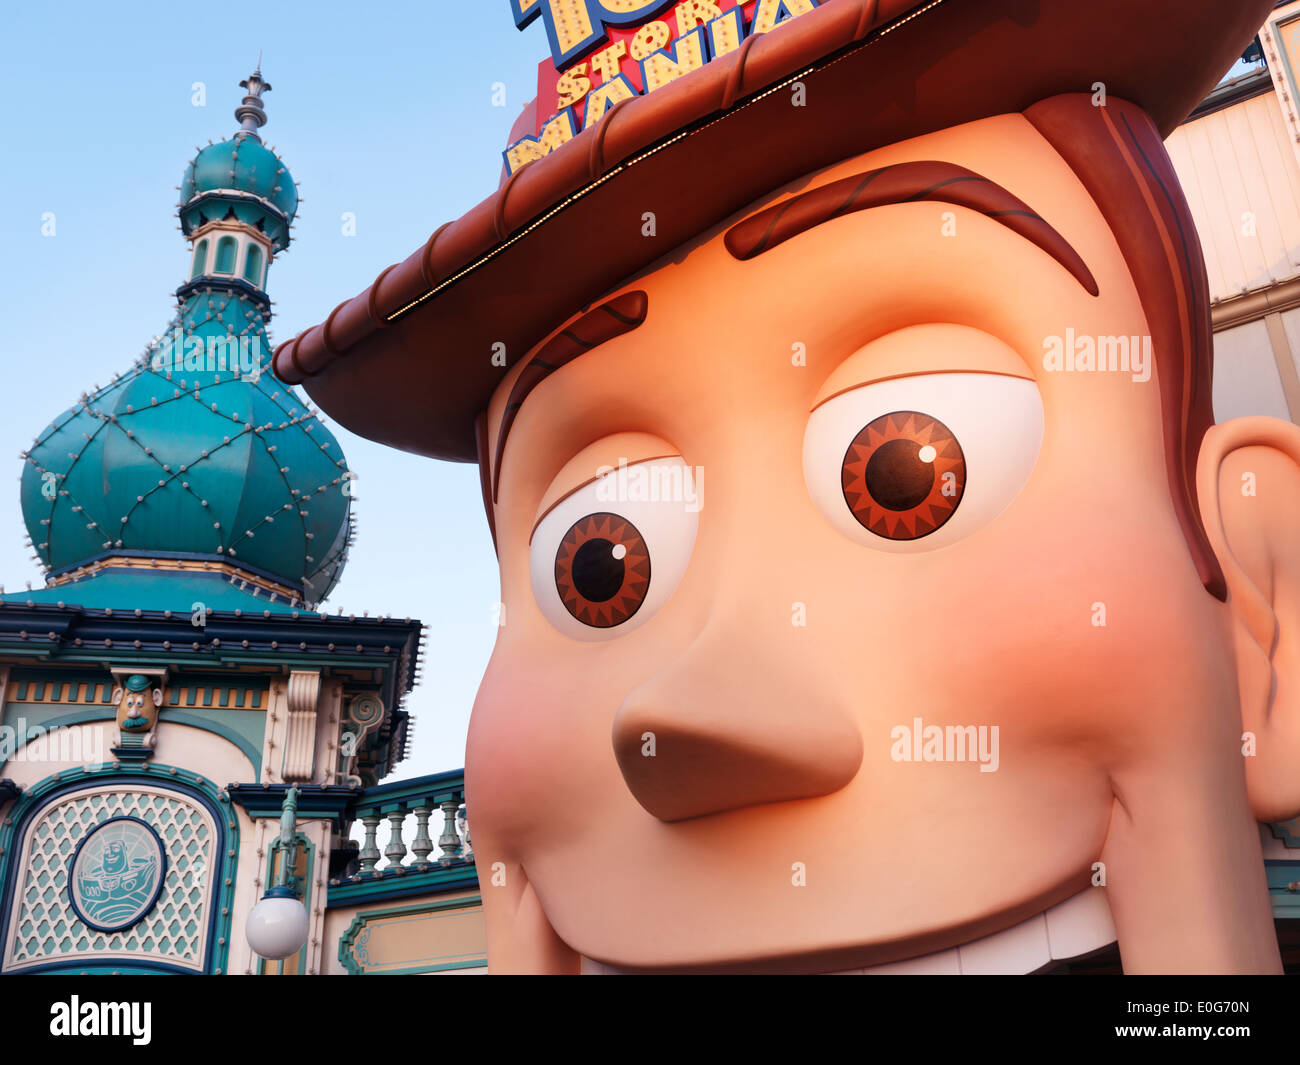 Cowboy Woody Toy Story unter dem Motto Top-Attraktion im Toyville Trolley Park, Tokyo Disneysea in Gesicht. Japan. Stockfoto